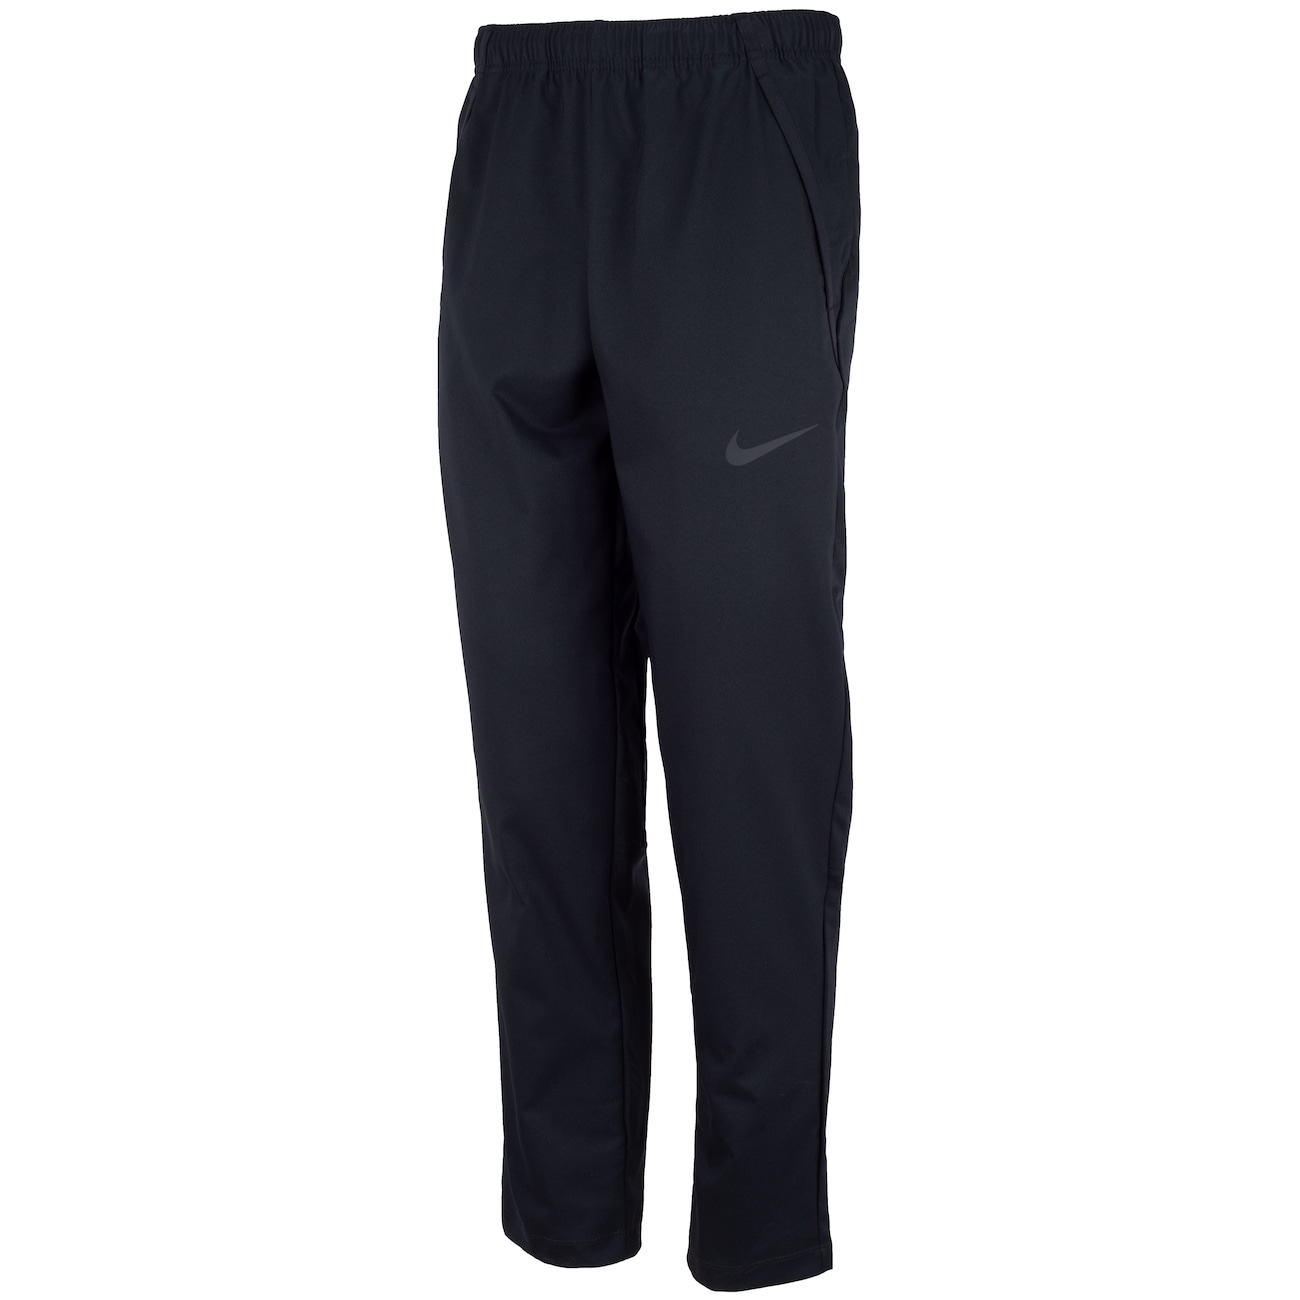 Calca Nike Dry Pant Team Woven 927380